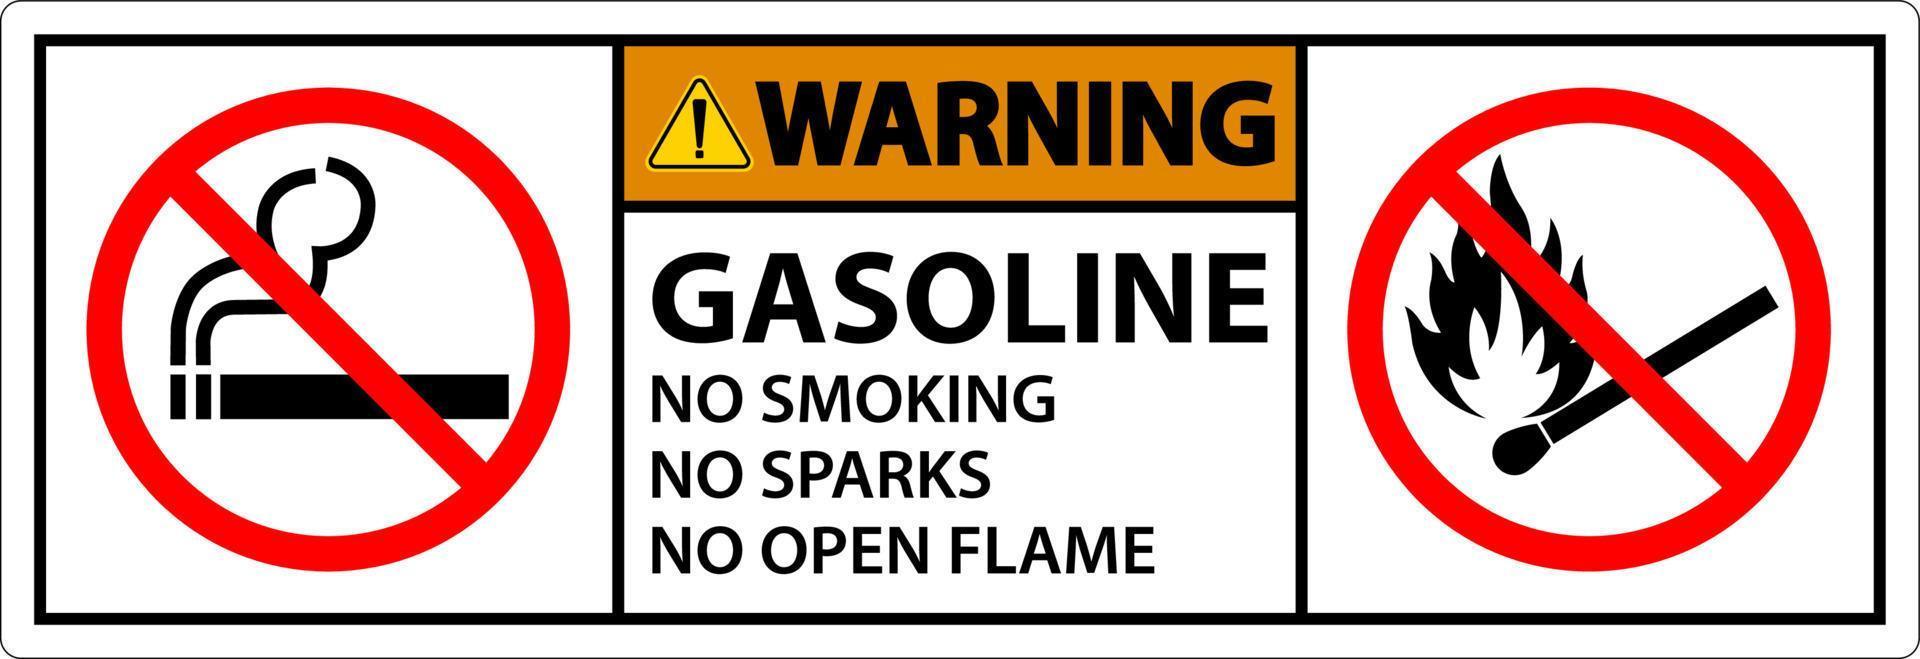 gasolina de advertencia no fumar chispas o señales de llamas abiertas vector